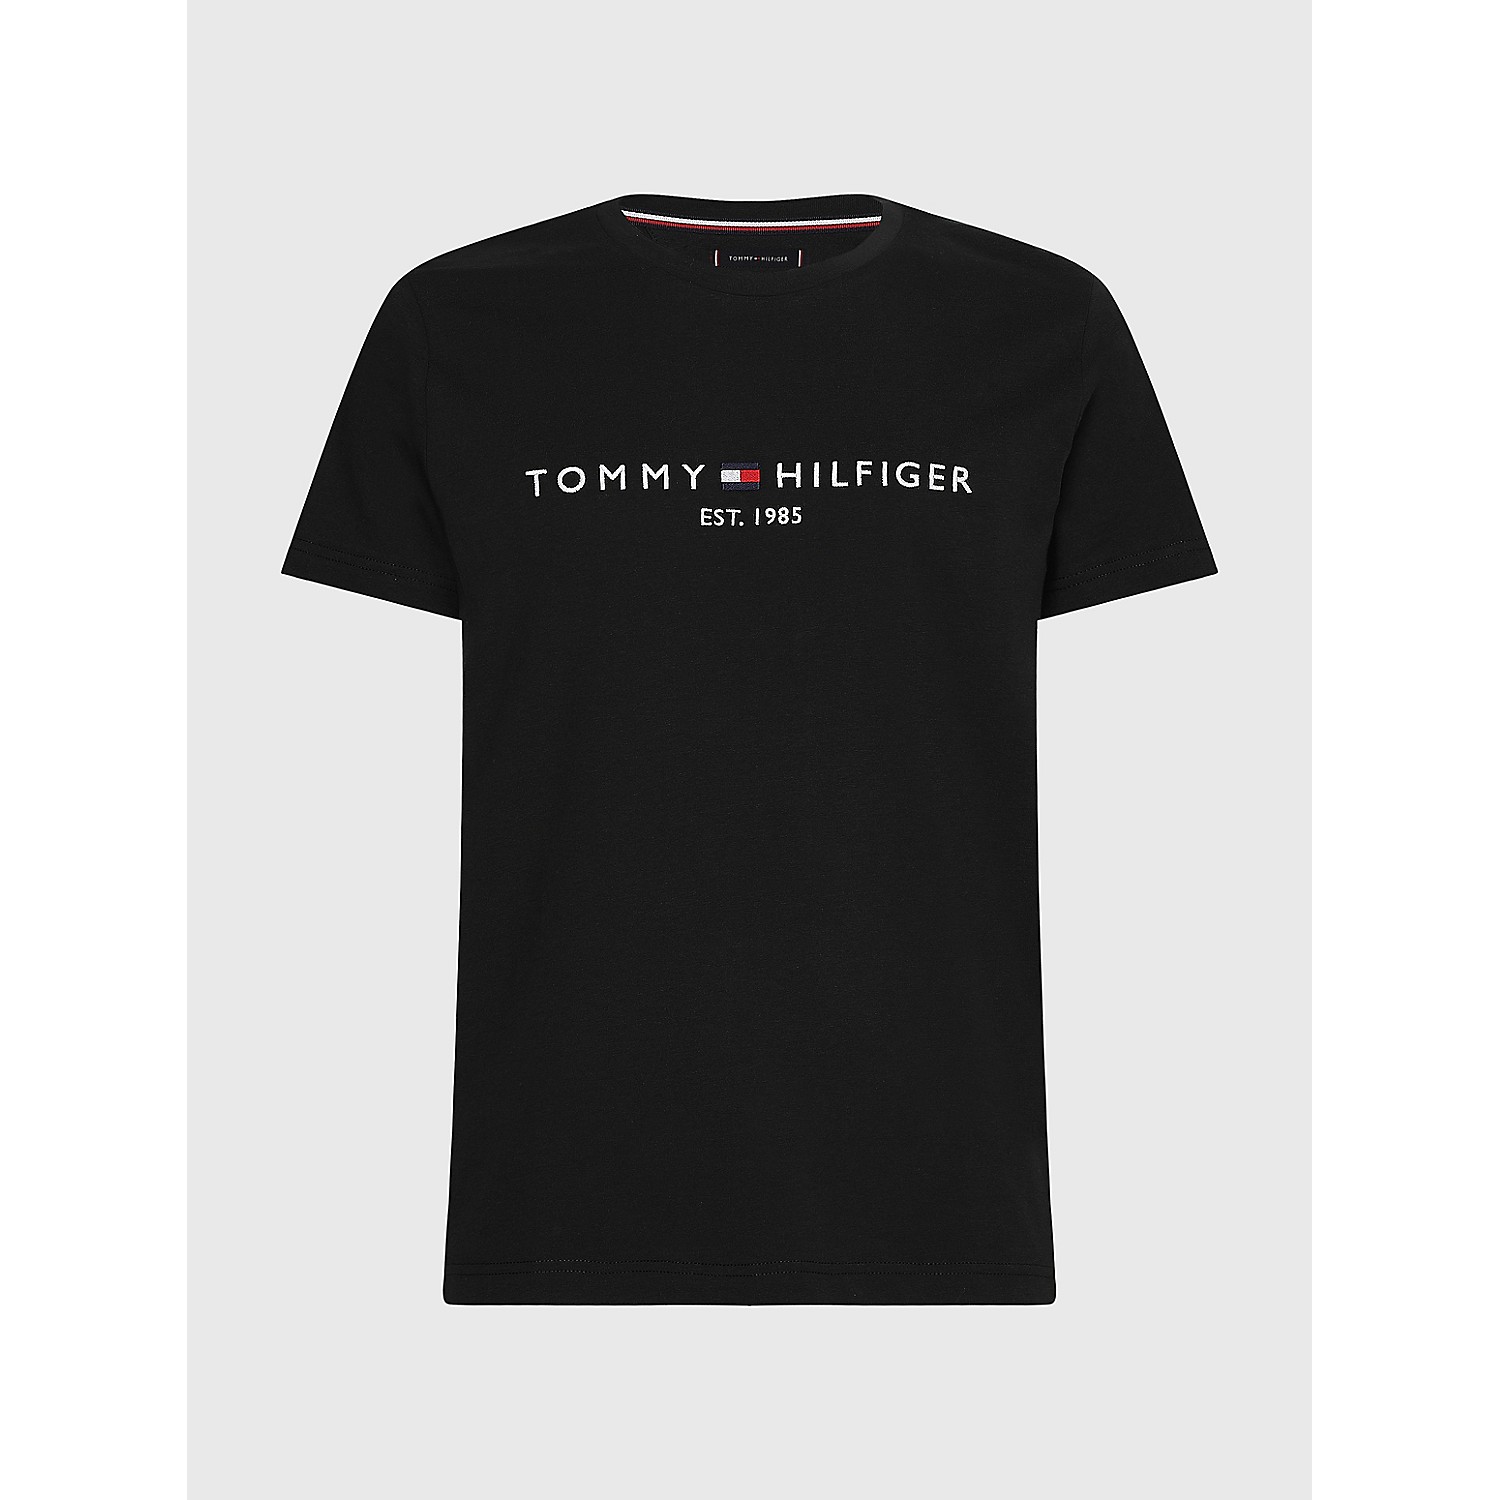 TOMMY HILFIGER Big and Tall Hilfiger Logo T-Shirt